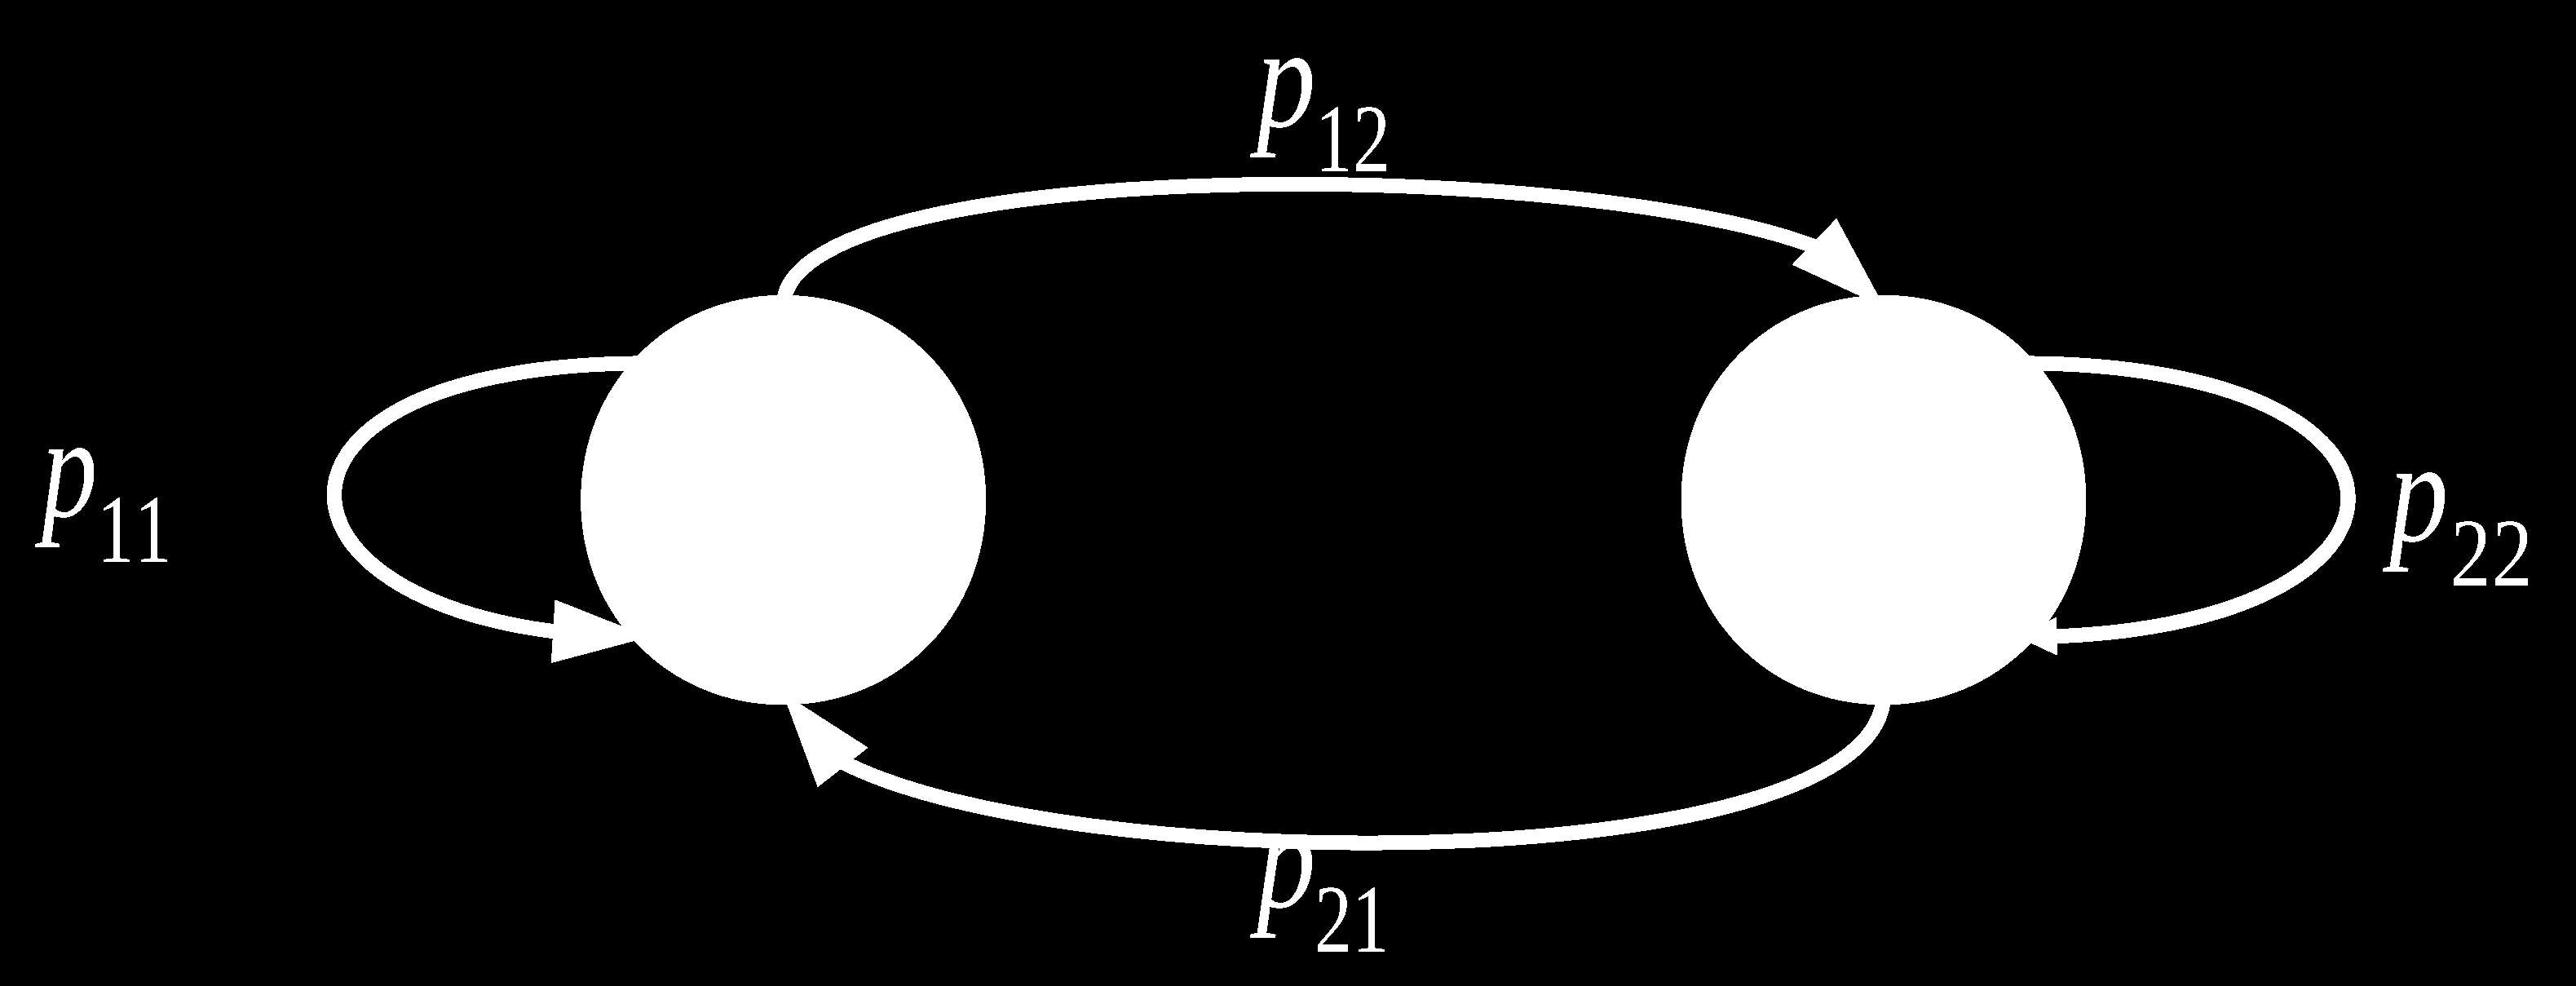 Σύστημα με 2 καταστάσεις (states) Πίνακας η Μήτρα Μετάβασης (Transition Matrix) P, ενός συστήματος Markov ονομάζεται ο πίνακας του οποίου τα